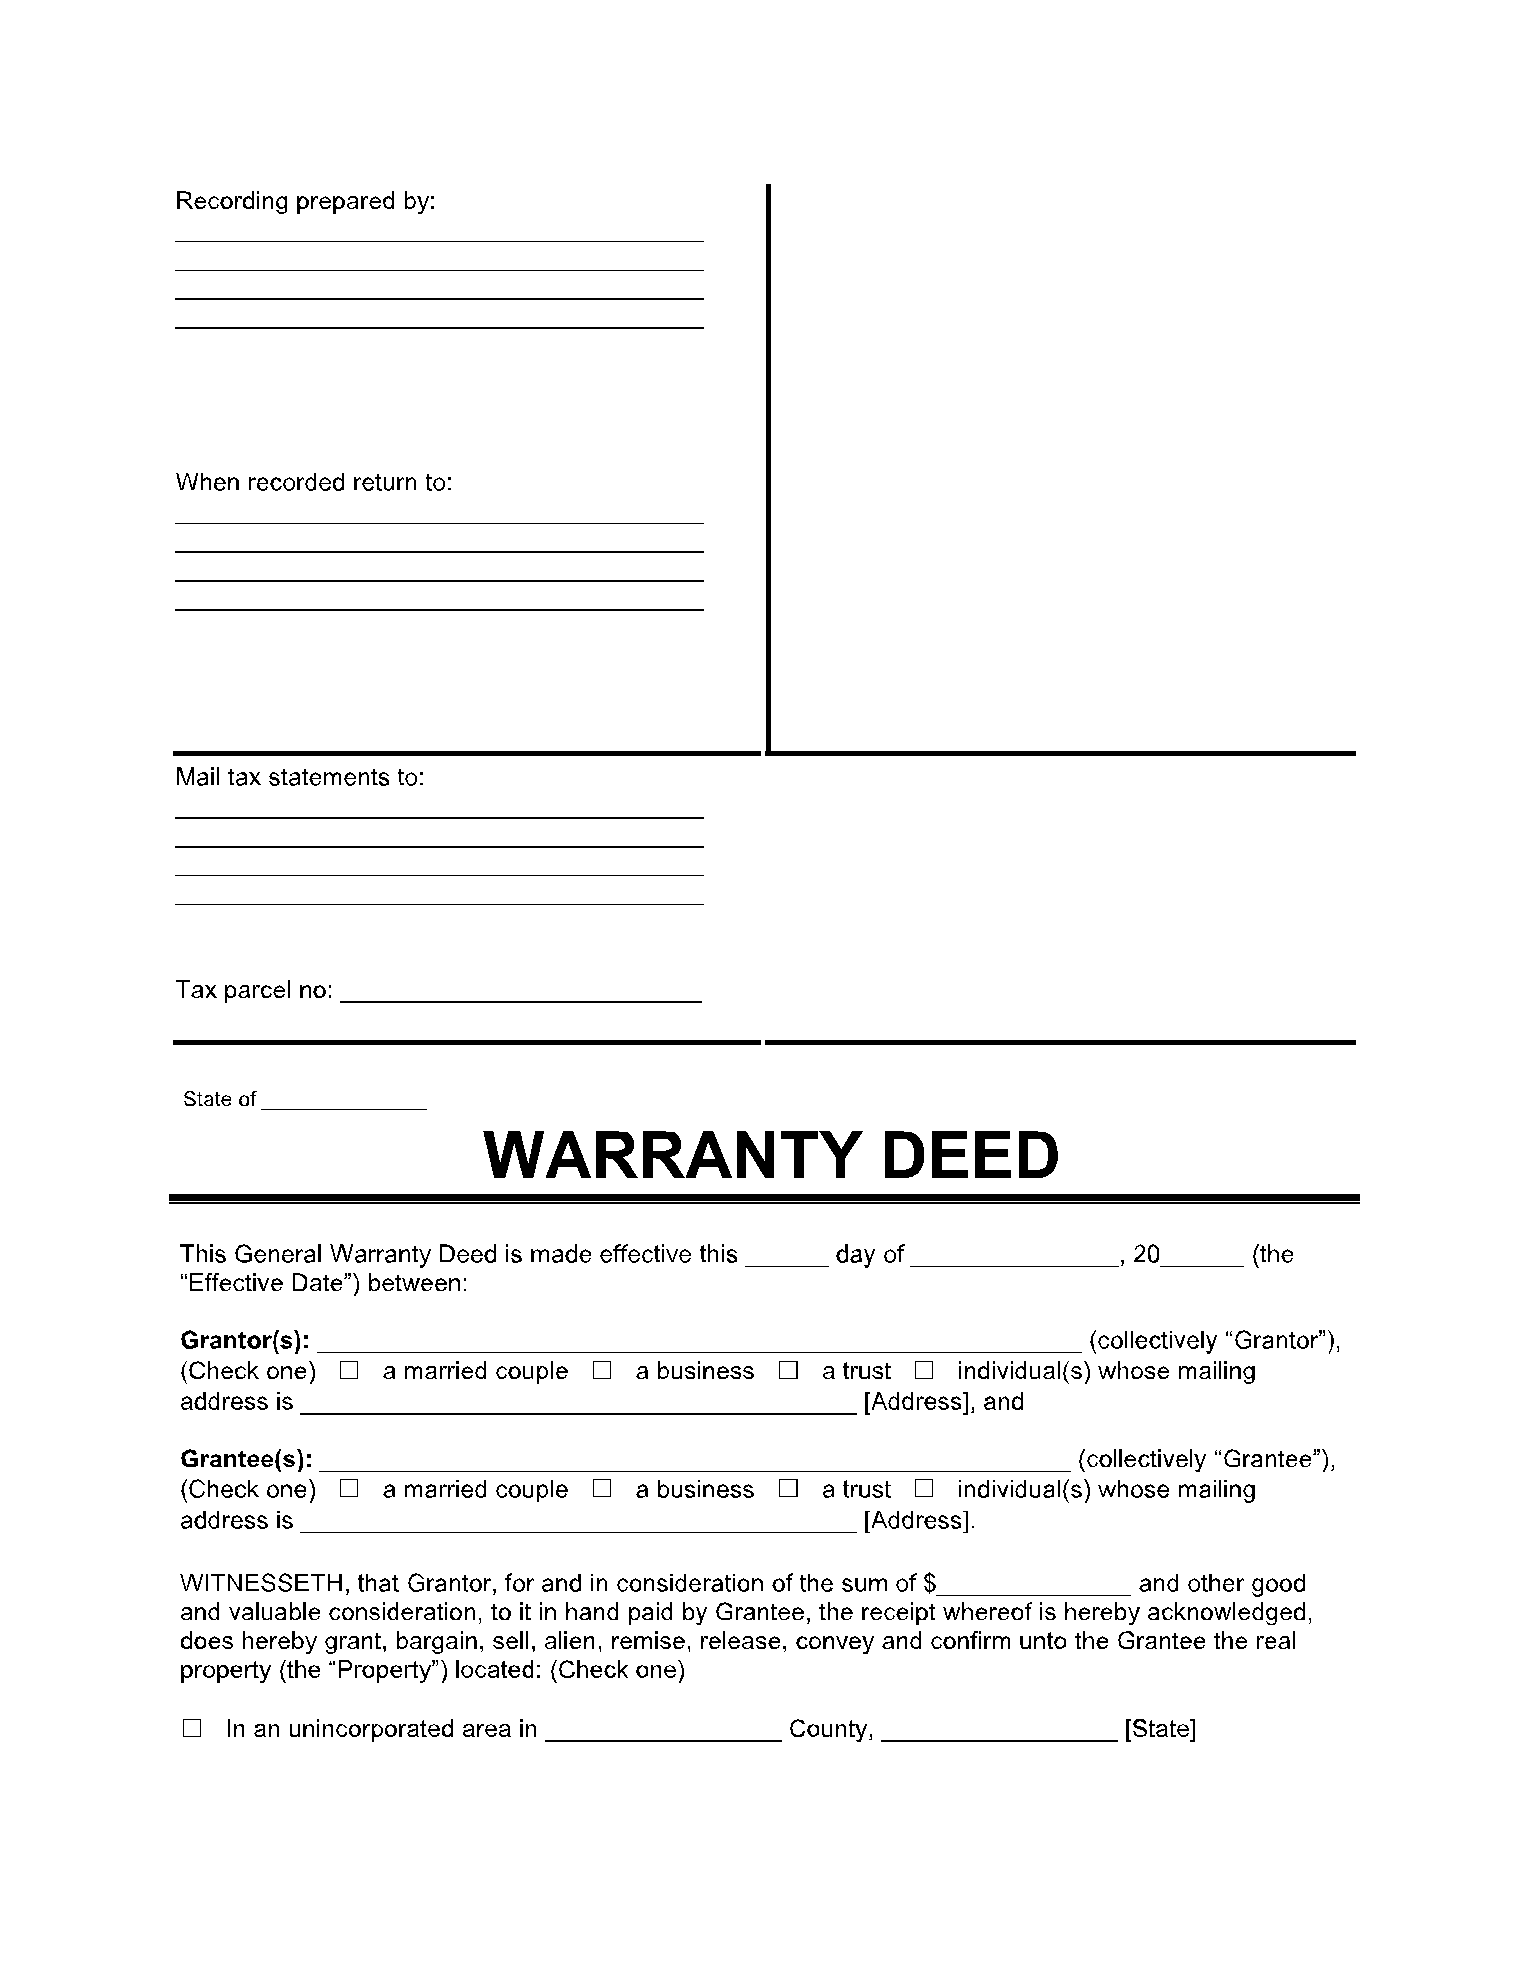 General Warranty Deed Form